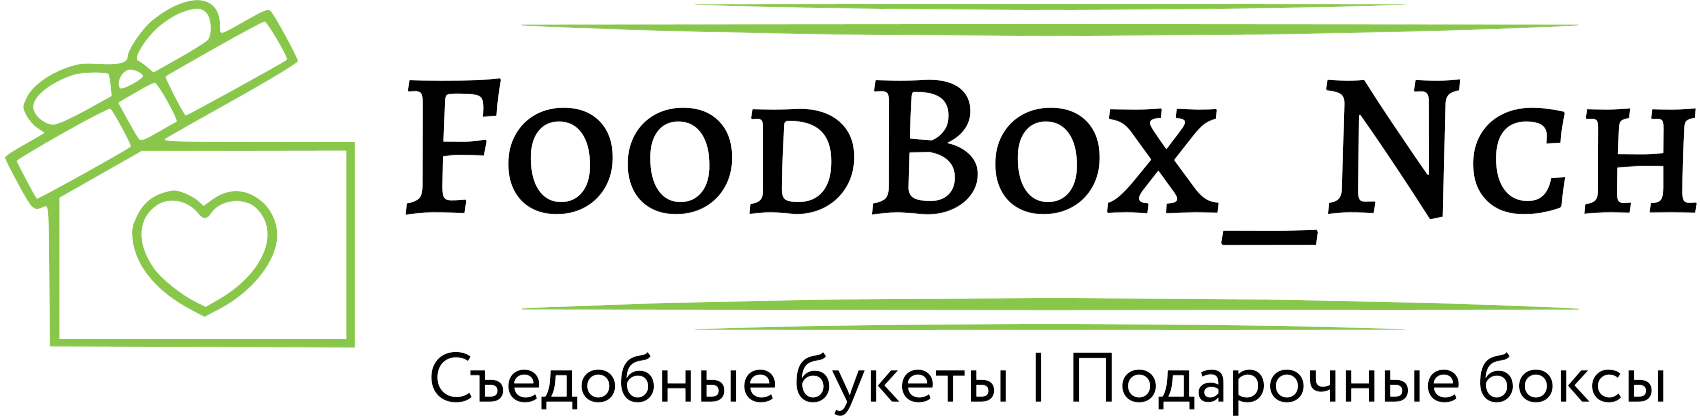 FoodBox_Nch